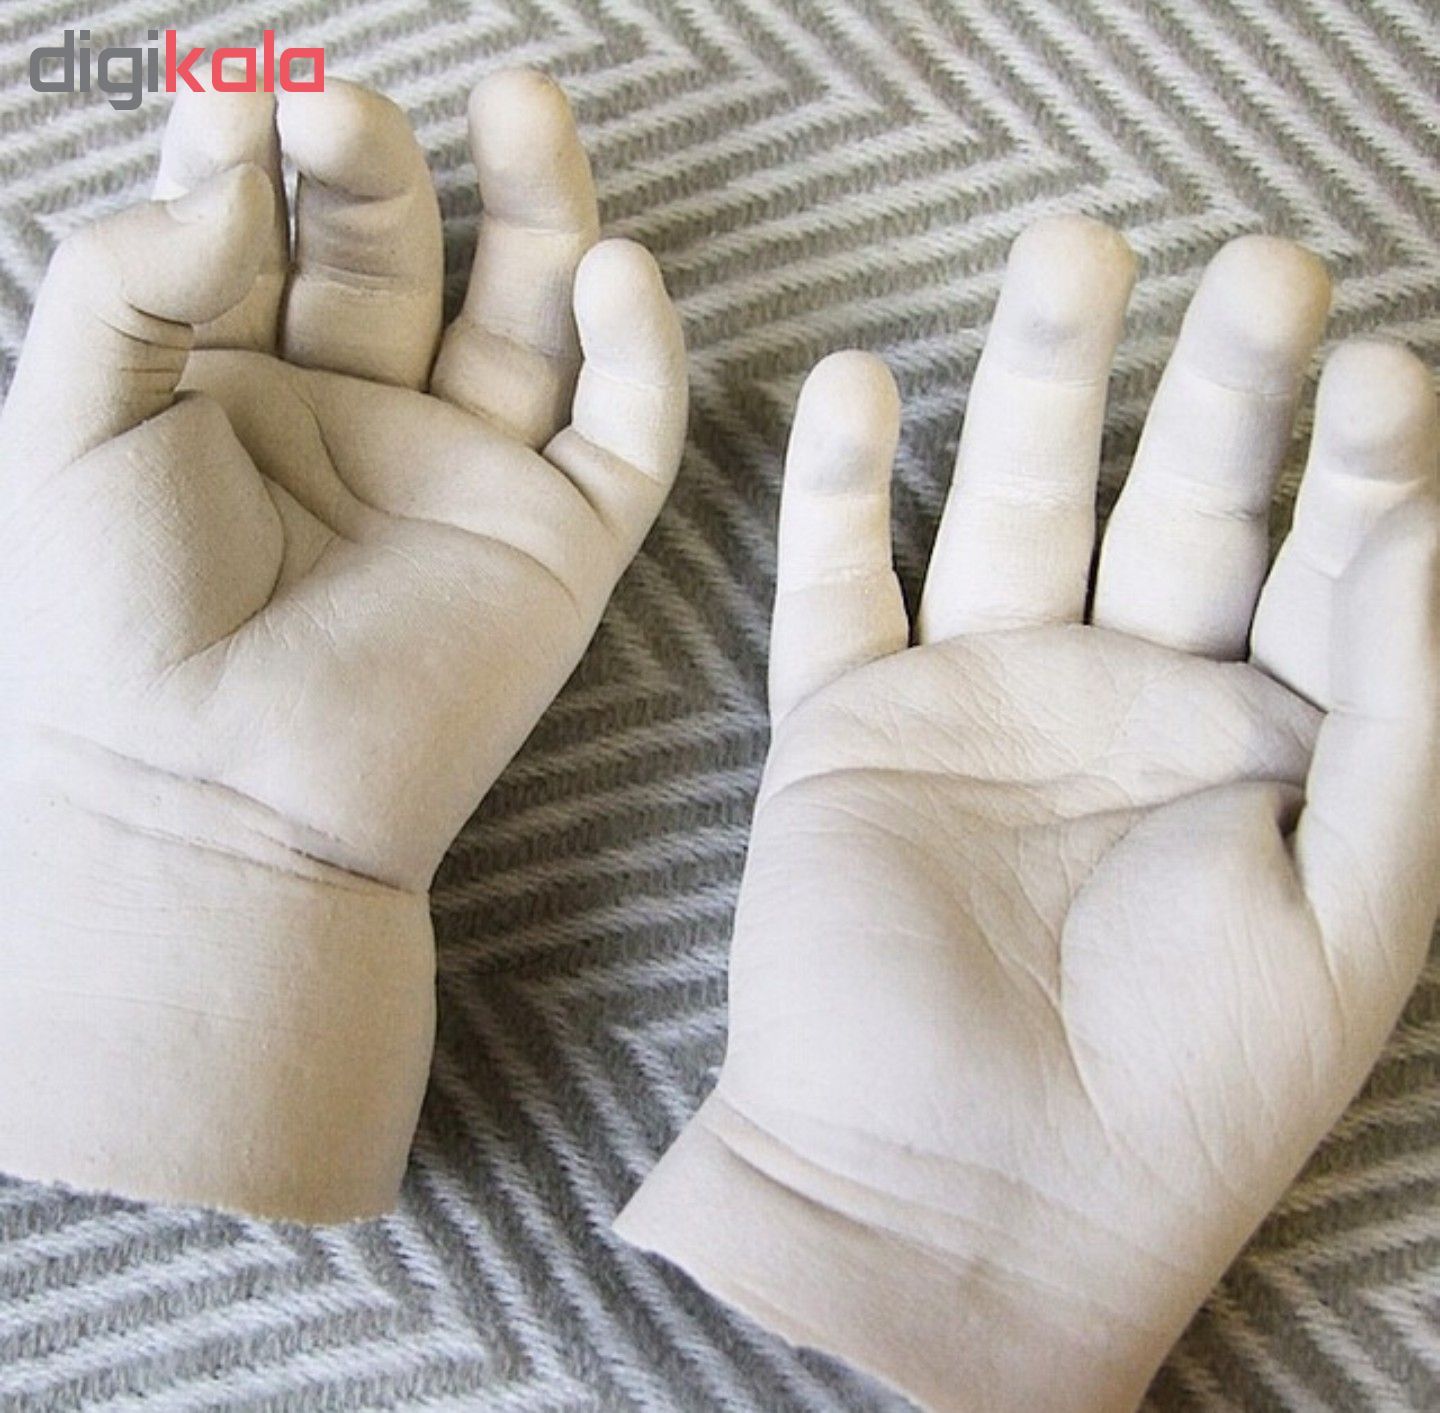 مجموعه قالبگیری مموری هندز مدل دست و پای نوزاد